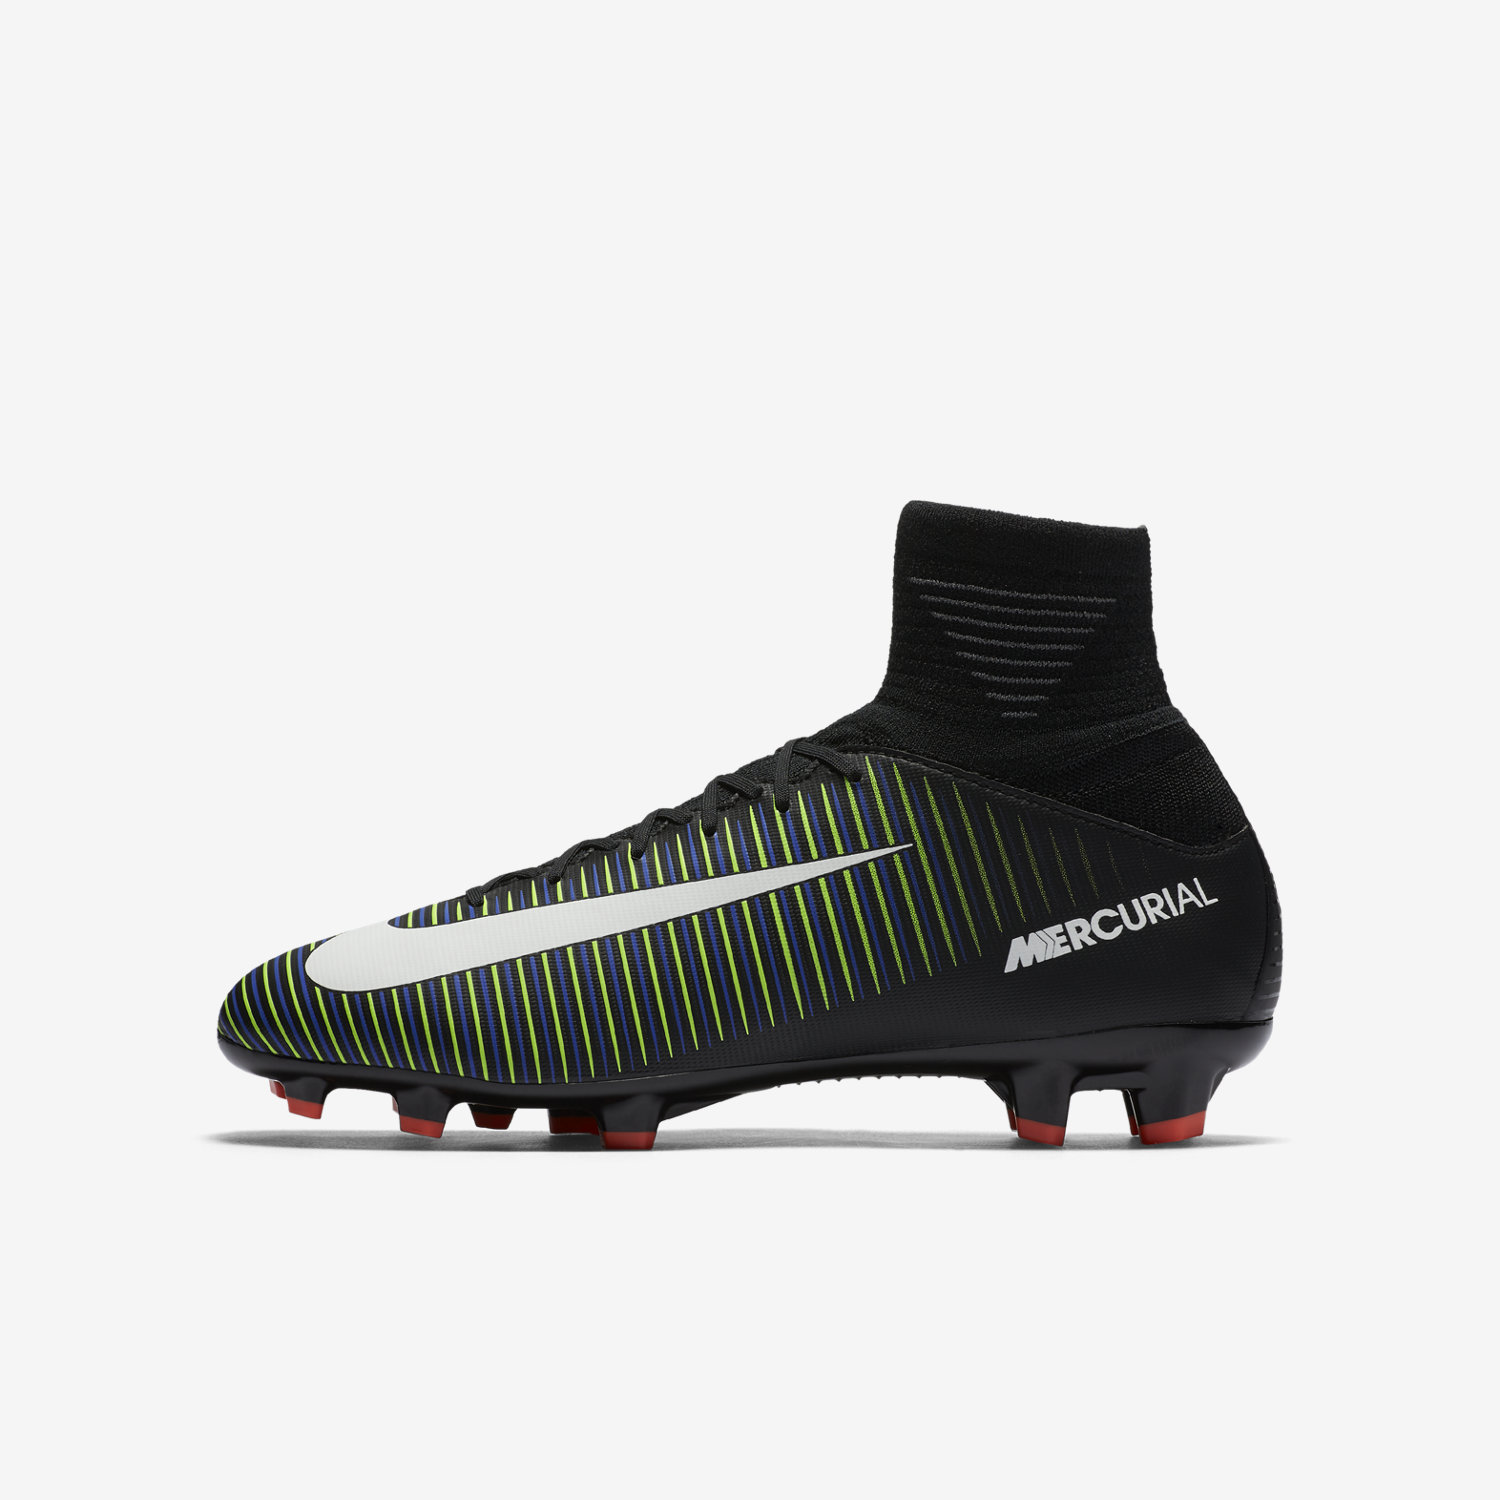 ποδοσφαιρικα παπουτσια για κοριτσια Nike Jr. Mercurial Superfly V FG μαυρα/πρασινο/μπλε/ασπρα 746929